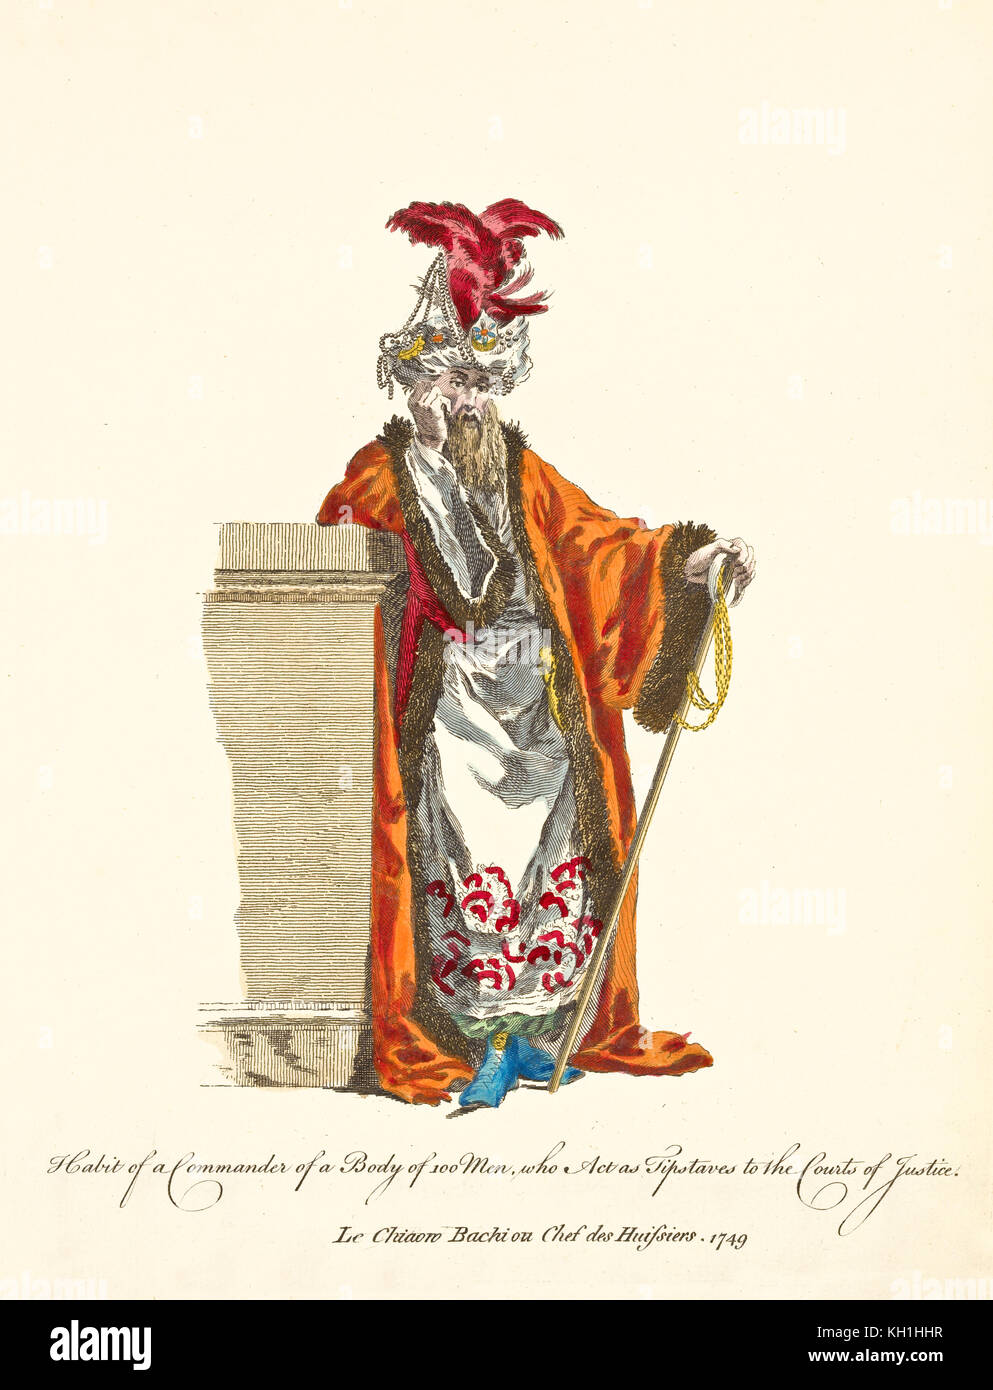 Tipstaff turco del Tribunal de Justicia en vestidos tradicionales en 1749. Ropa rica, joyería, turbante con plumas rojas, palo largo. Autor 1757-1772 Foto de stock